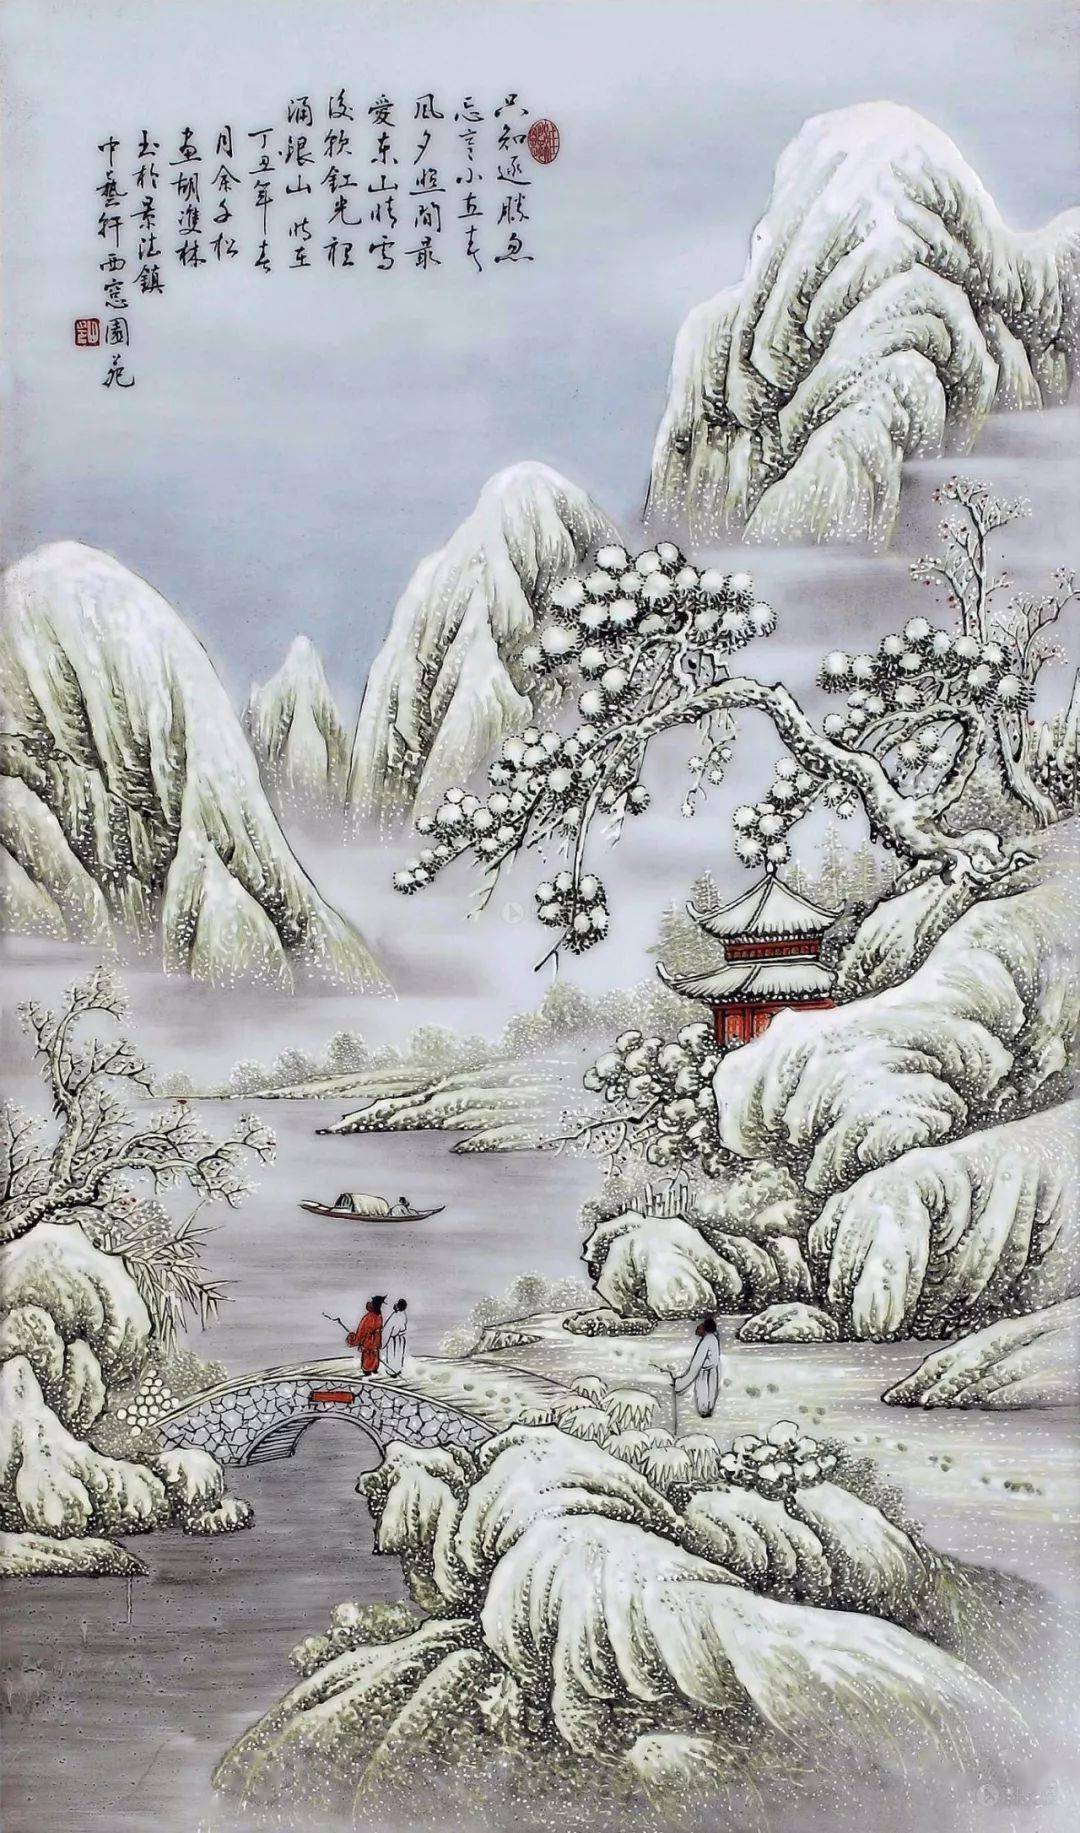 醉书画:大自然的静谧,画中雪景,美如世外桃源!